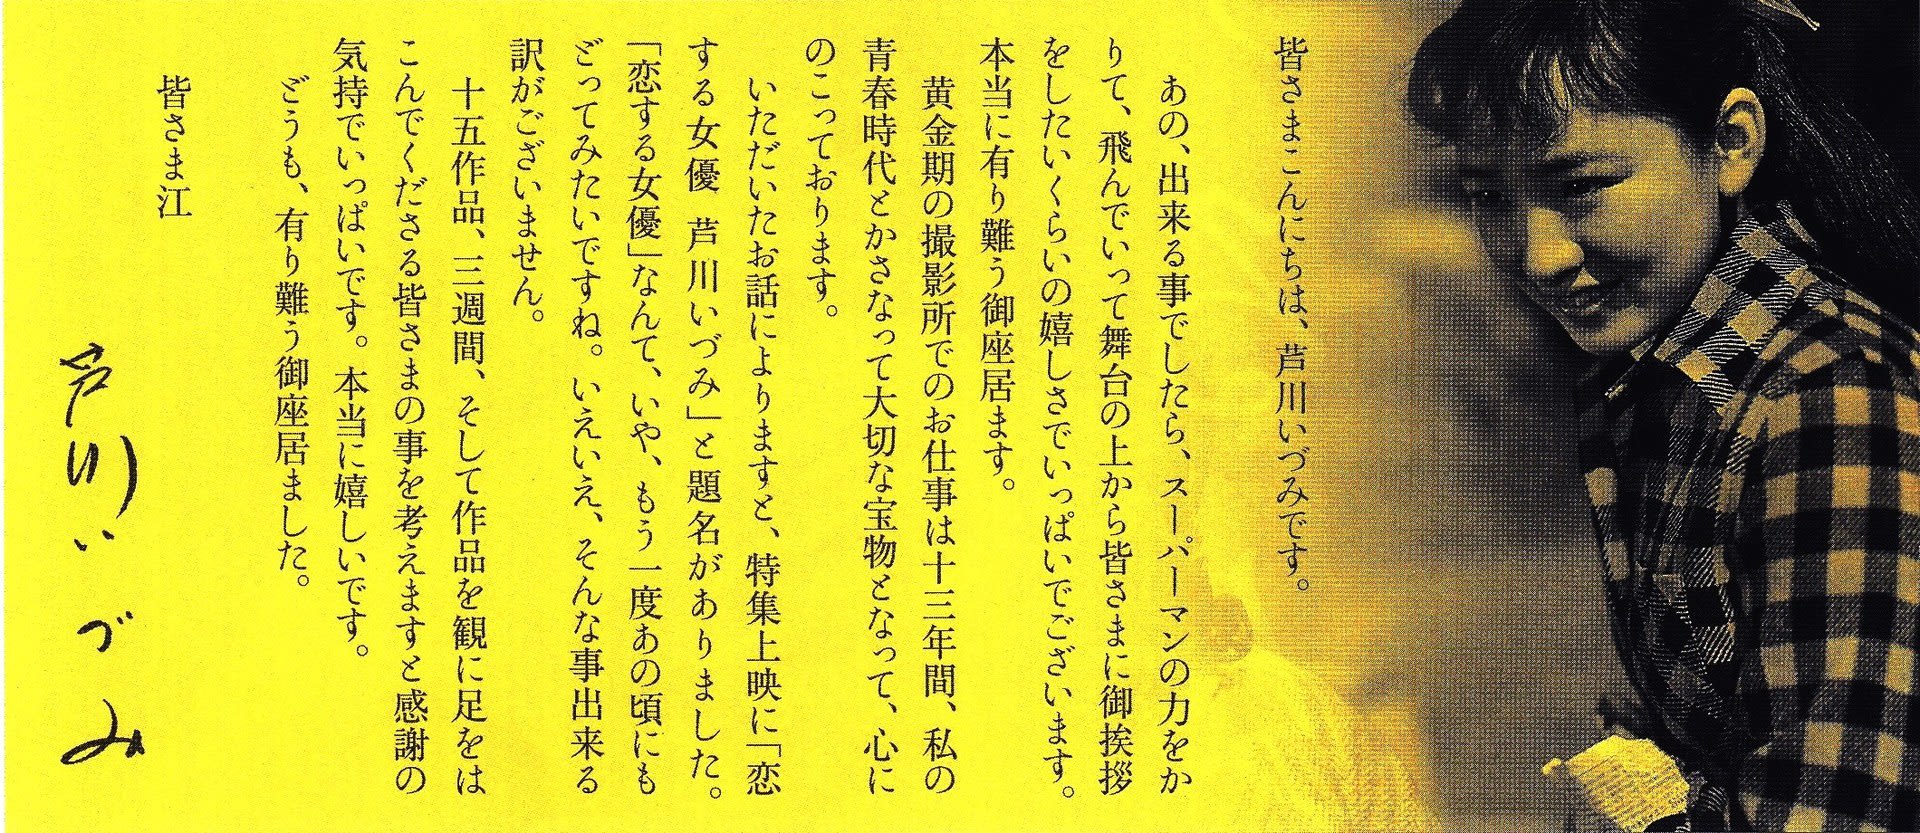 芦川いづみの映画を見る 尾形修一の紫陽花 あじさい 通信